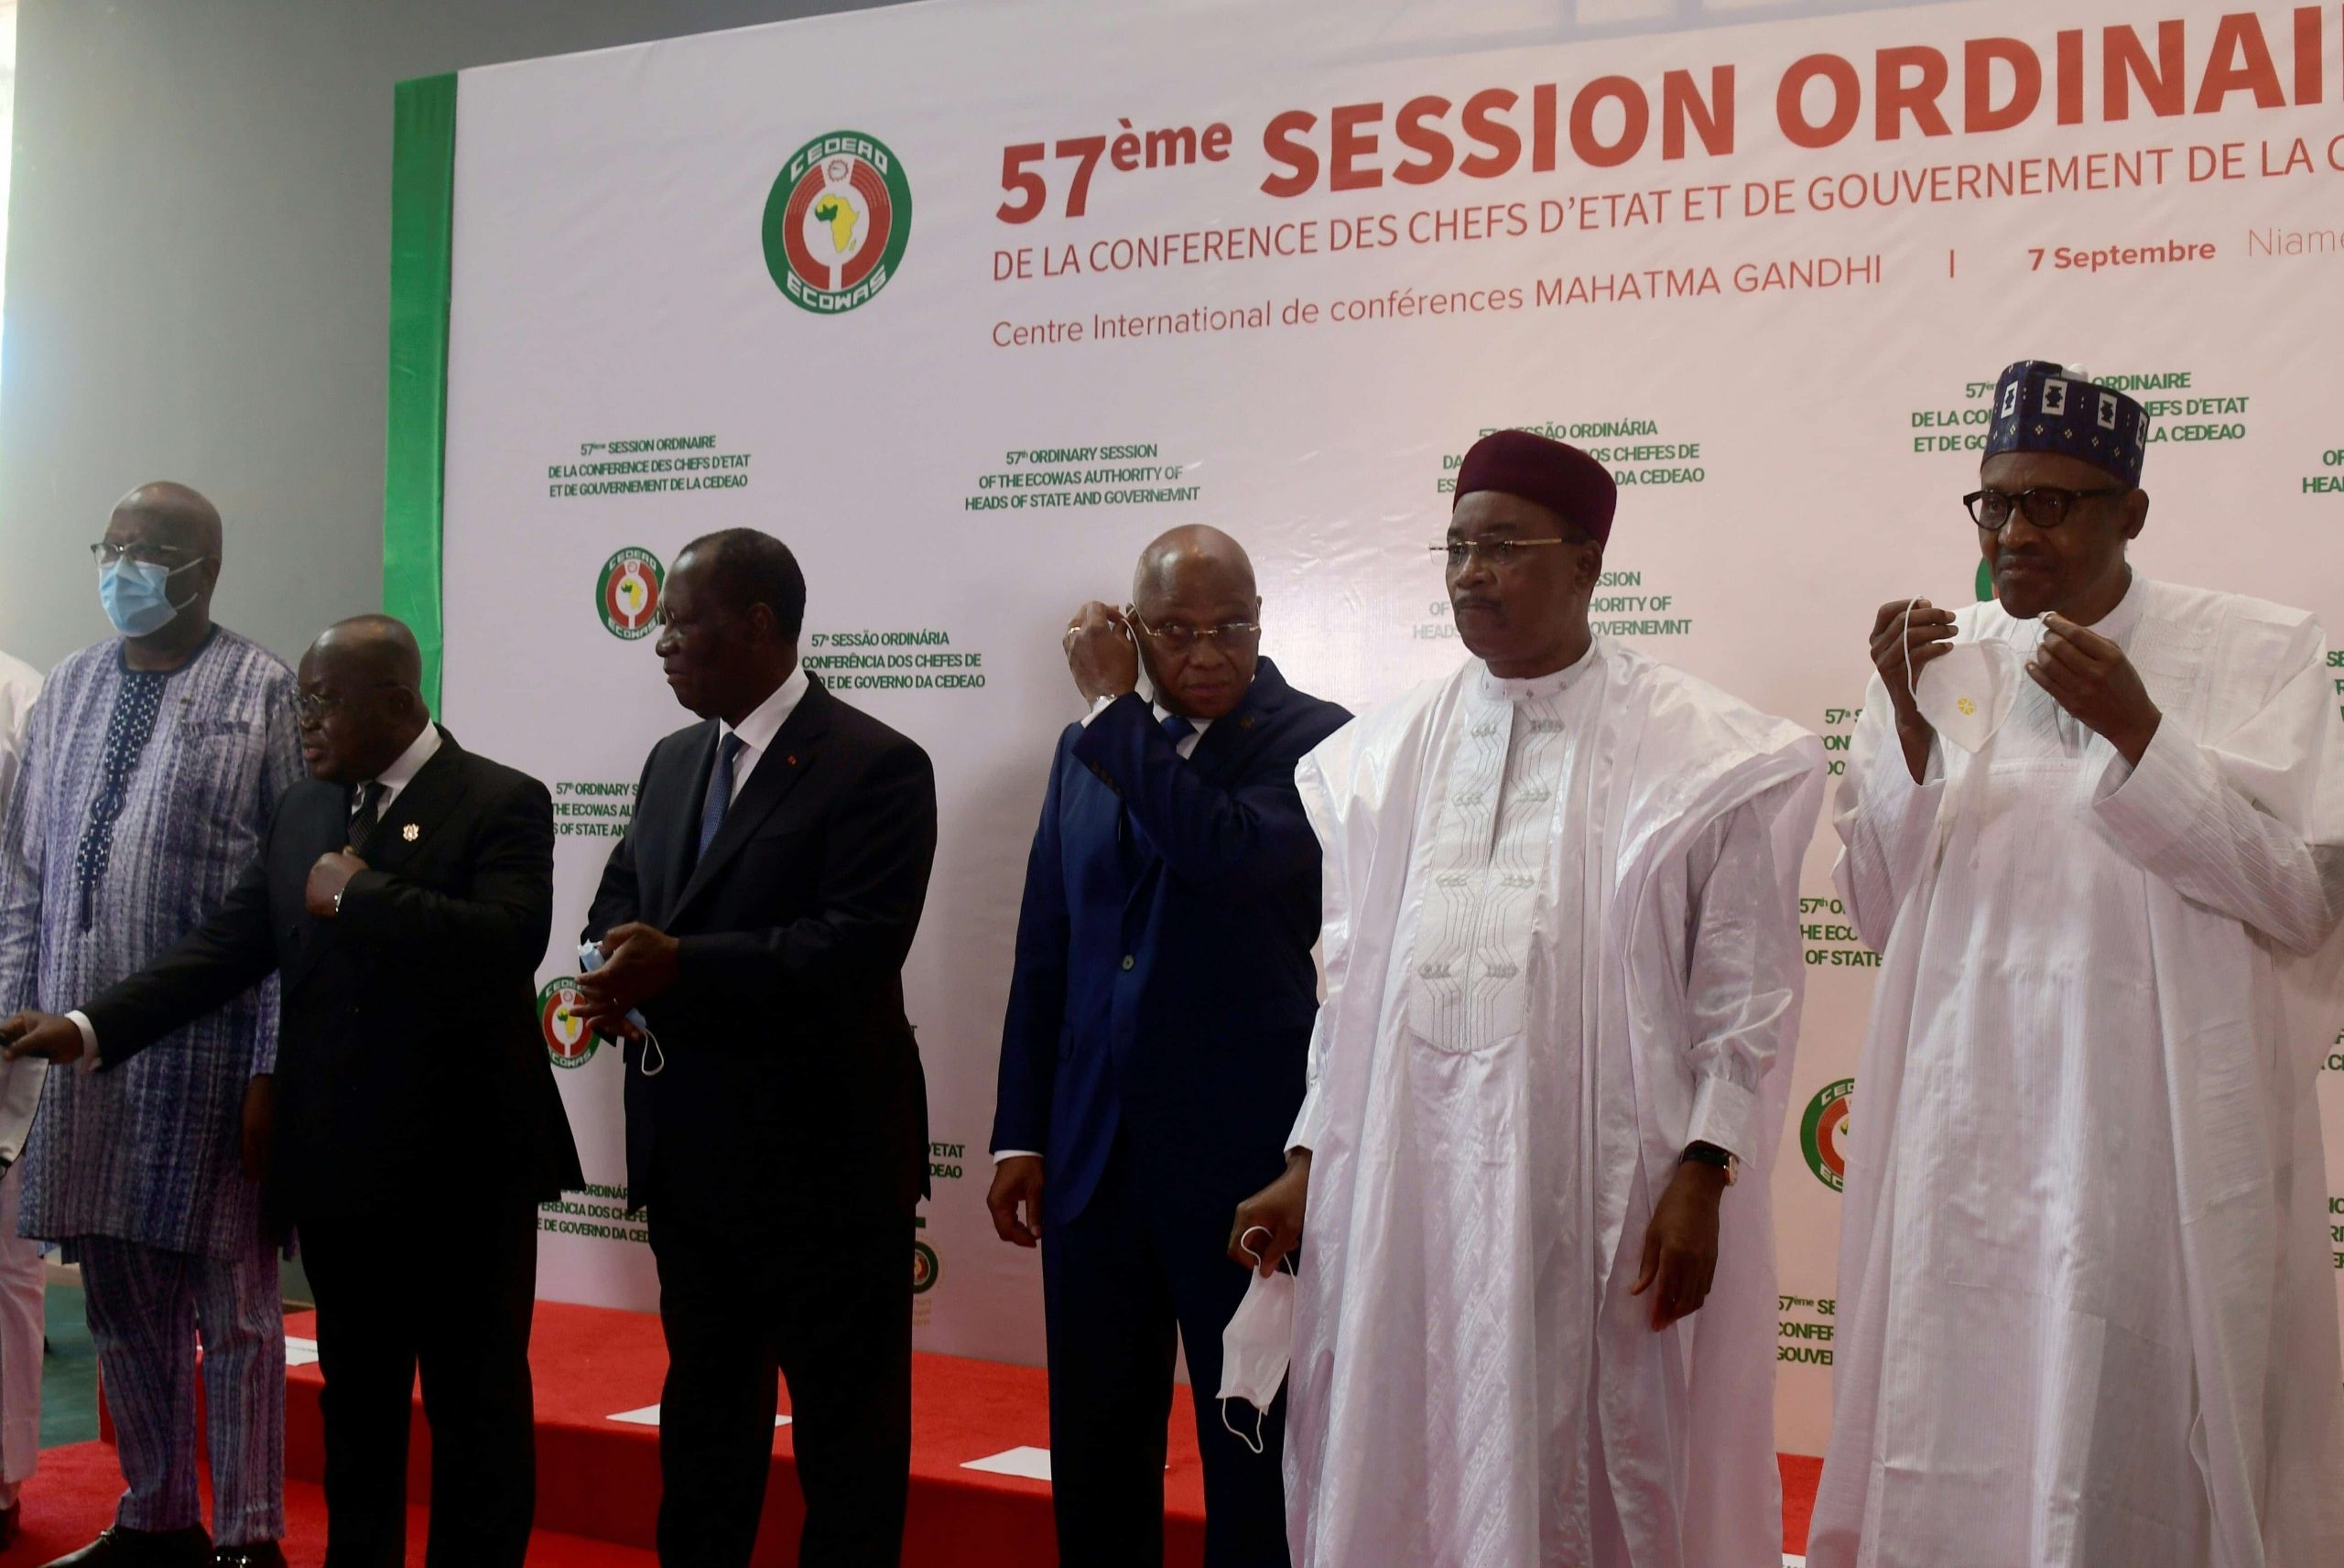 La situation malienne au cœur de la 57ième session ordinaire de la CEDEAO au Niger